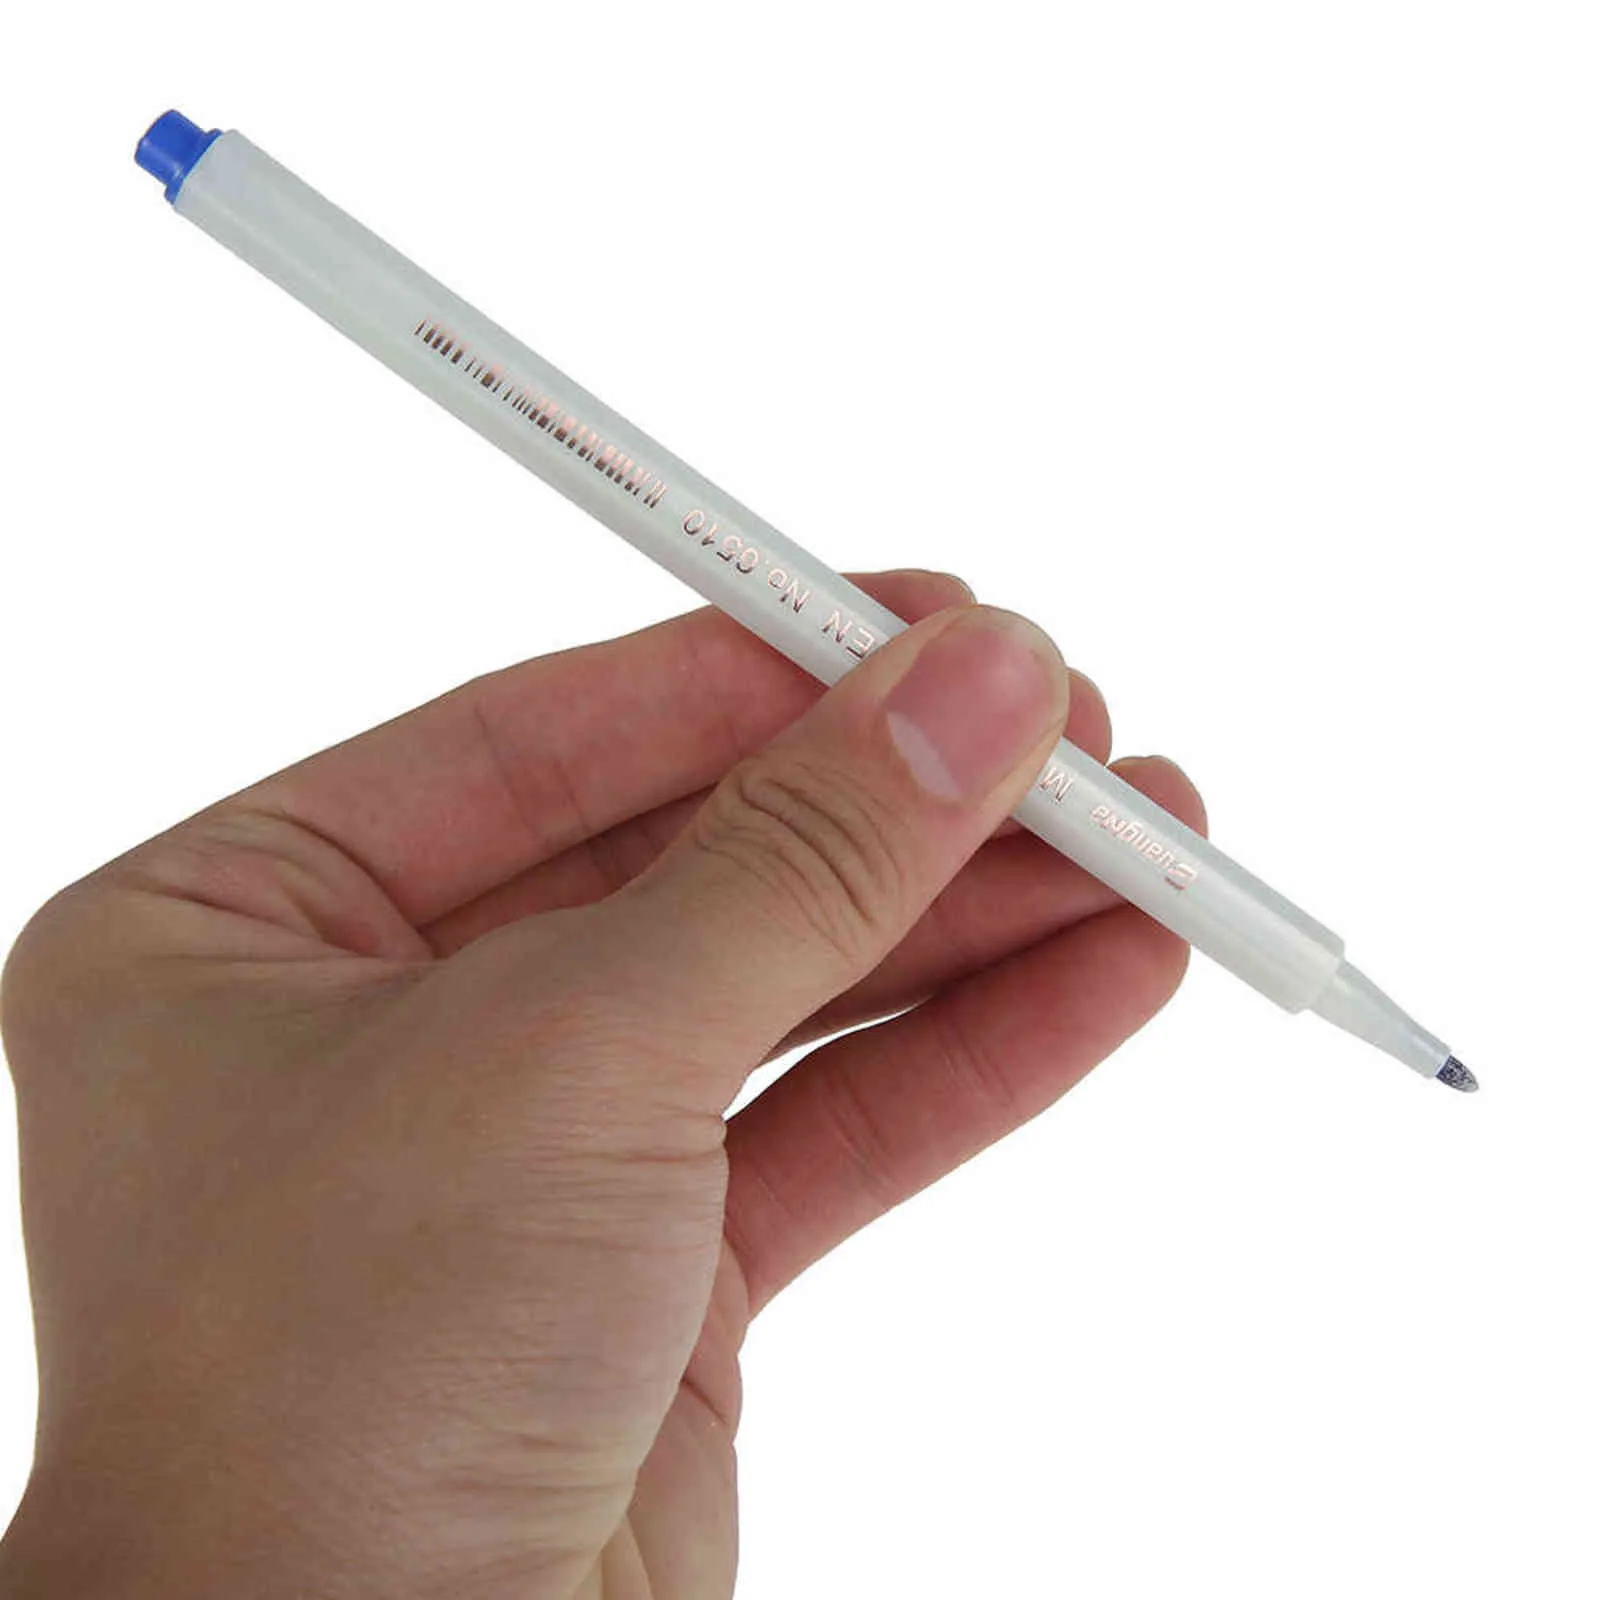 30 adet / takım Renk Akrilik Boya Marker Kalemler Set Kalıcı Taş Cam Kart Yapımı için Metal Kumaş Sanat Okul Malzemeleri 211104